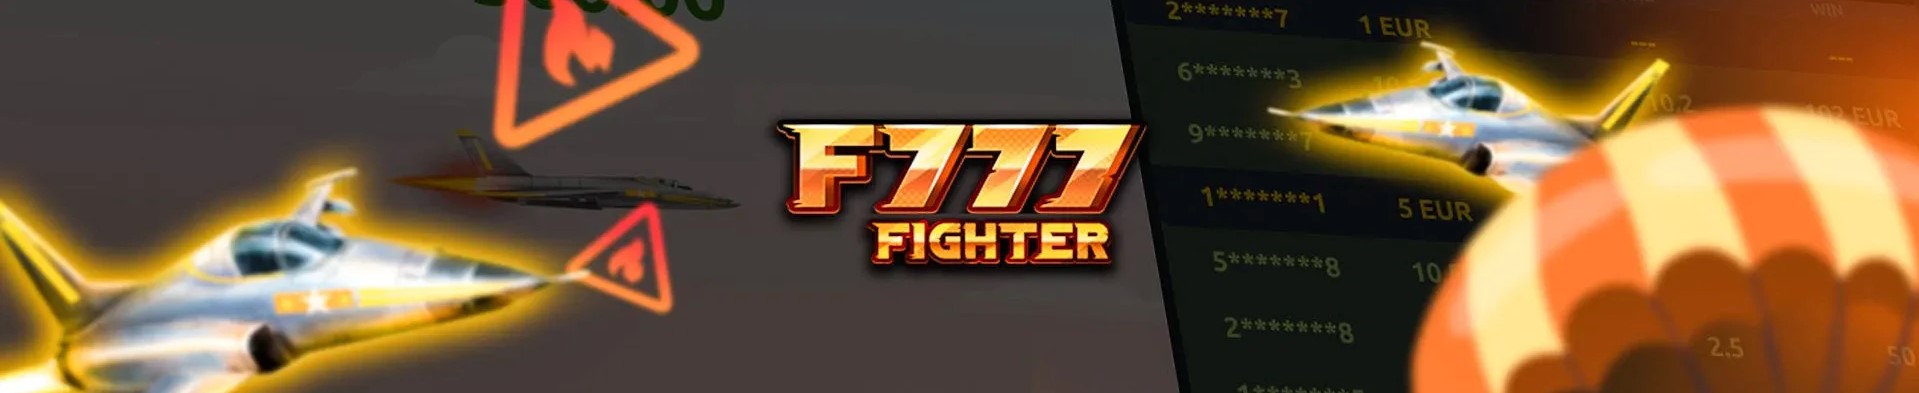 F777 fighterのゲームです。